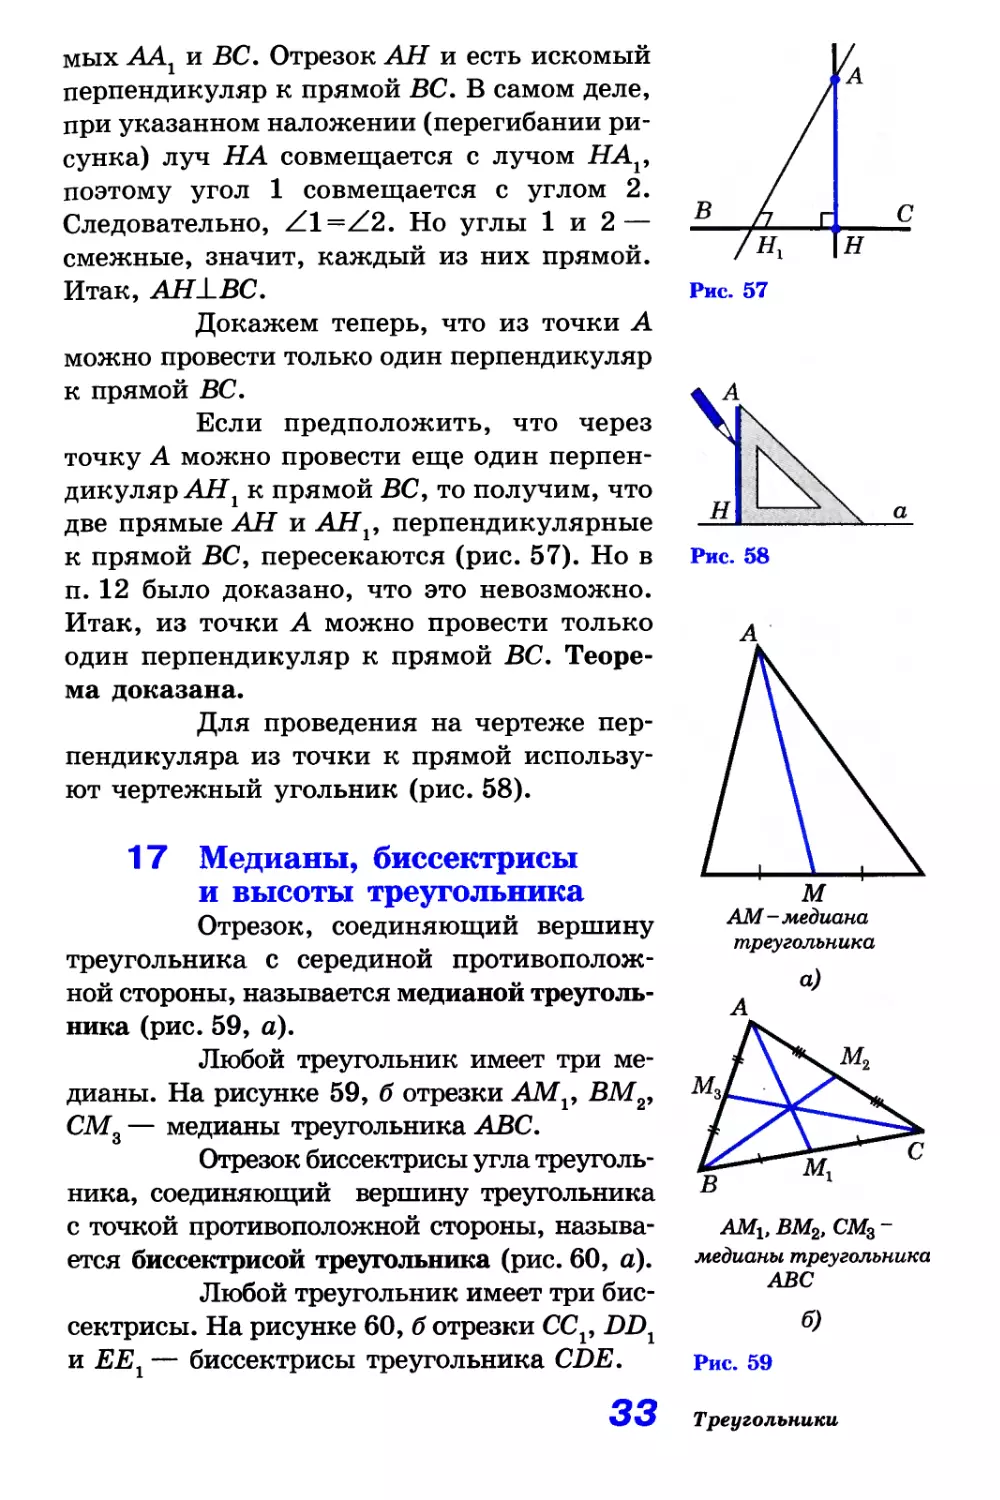 17. Медианы, биссектрисы и высоты треугольника